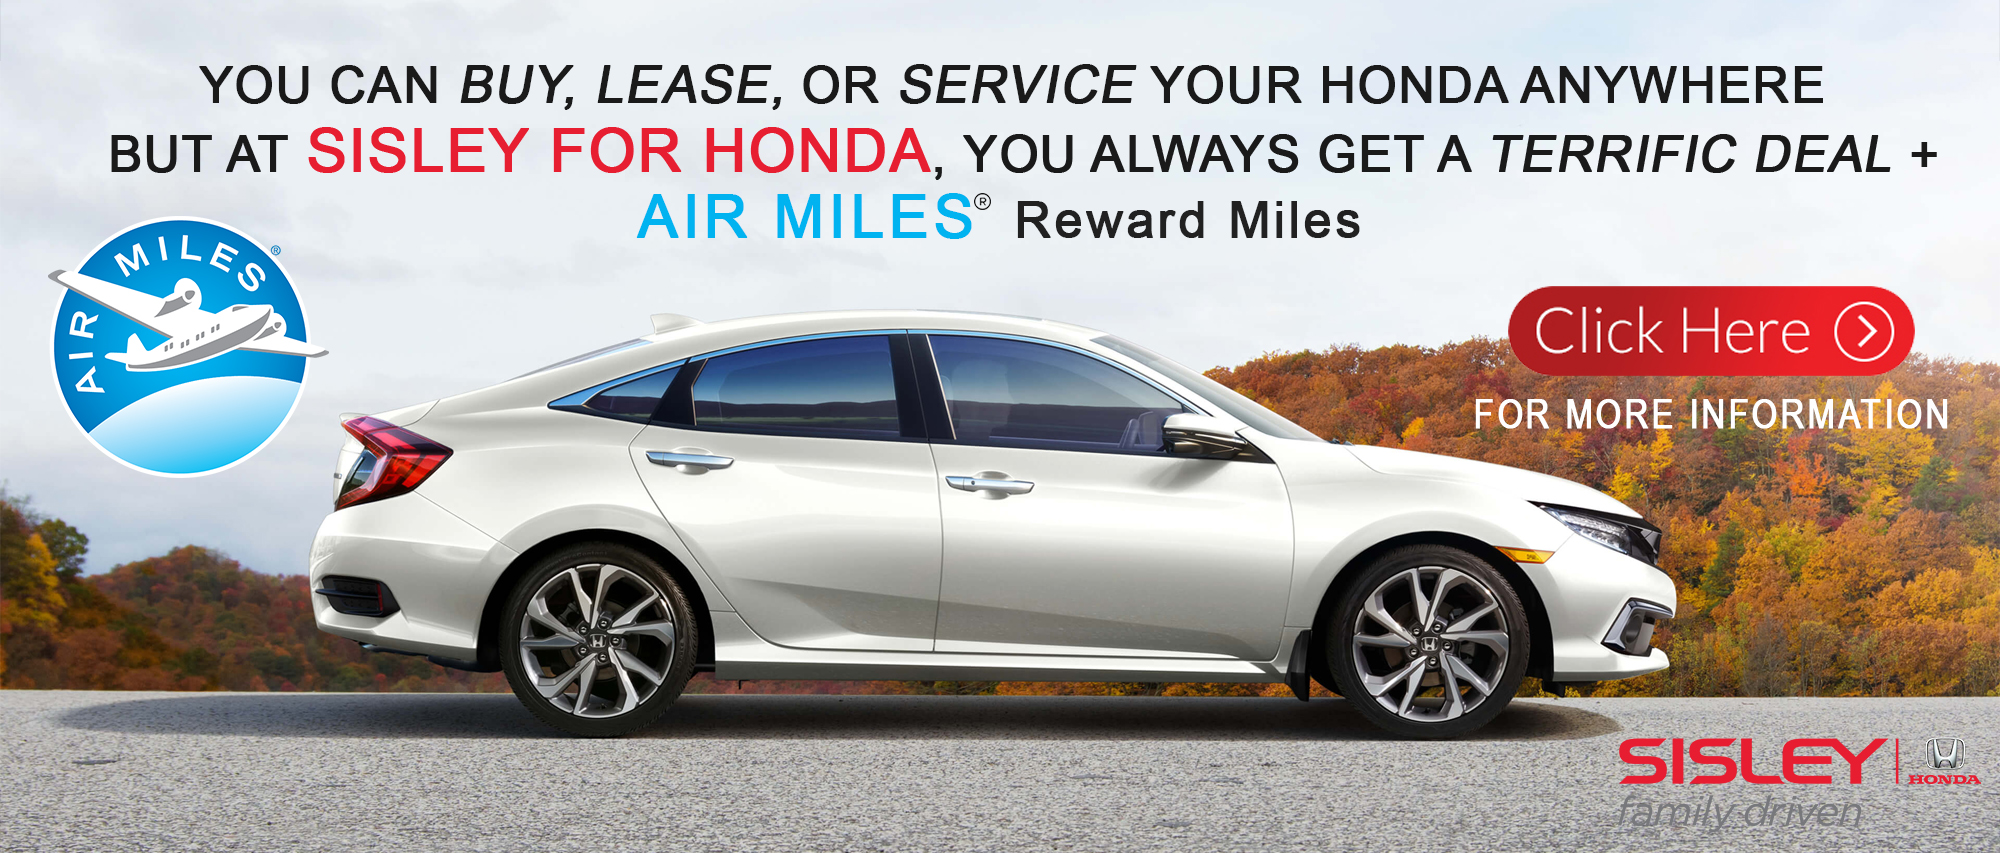 At Sisley for Honda, you get a fantastic deal PLUS AIR MILES Reward Miles!